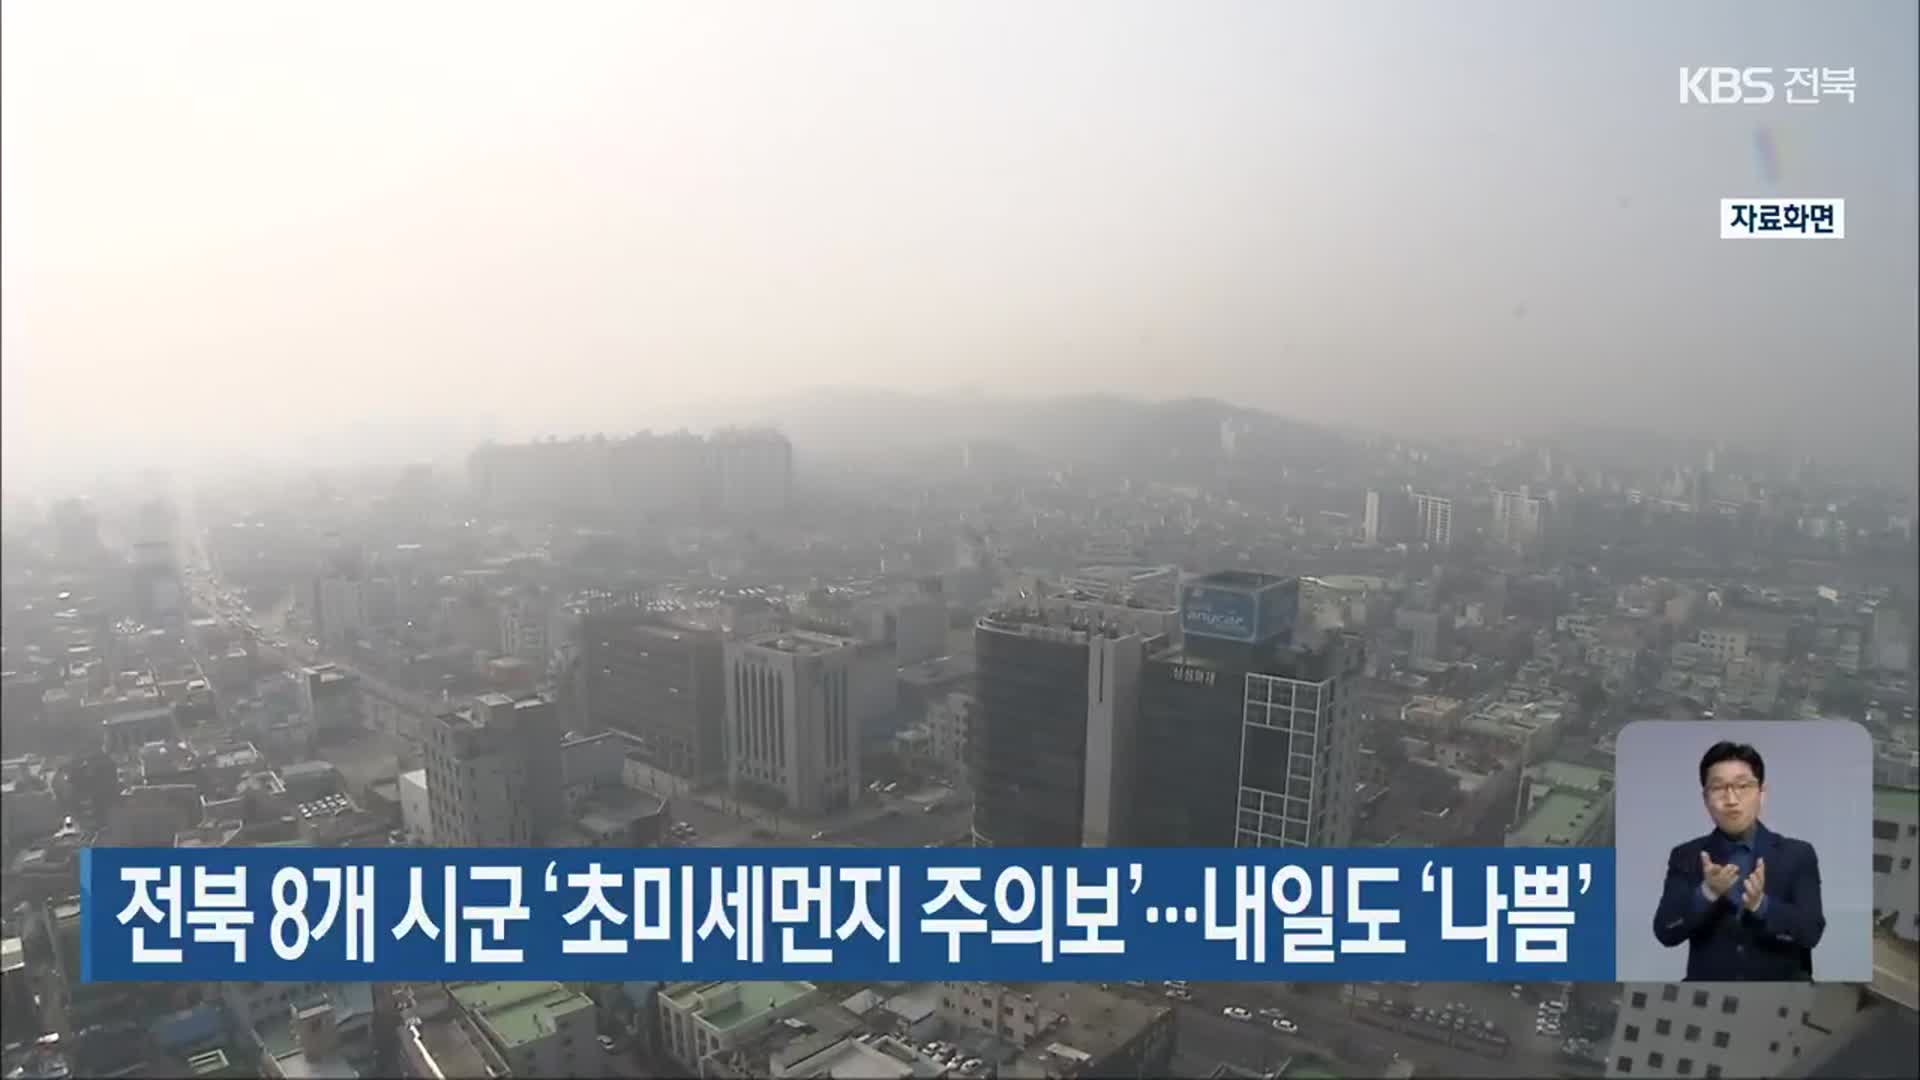 전북 8개 시군 ‘초미세먼지 주의보’…내일도 ‘나쁨’